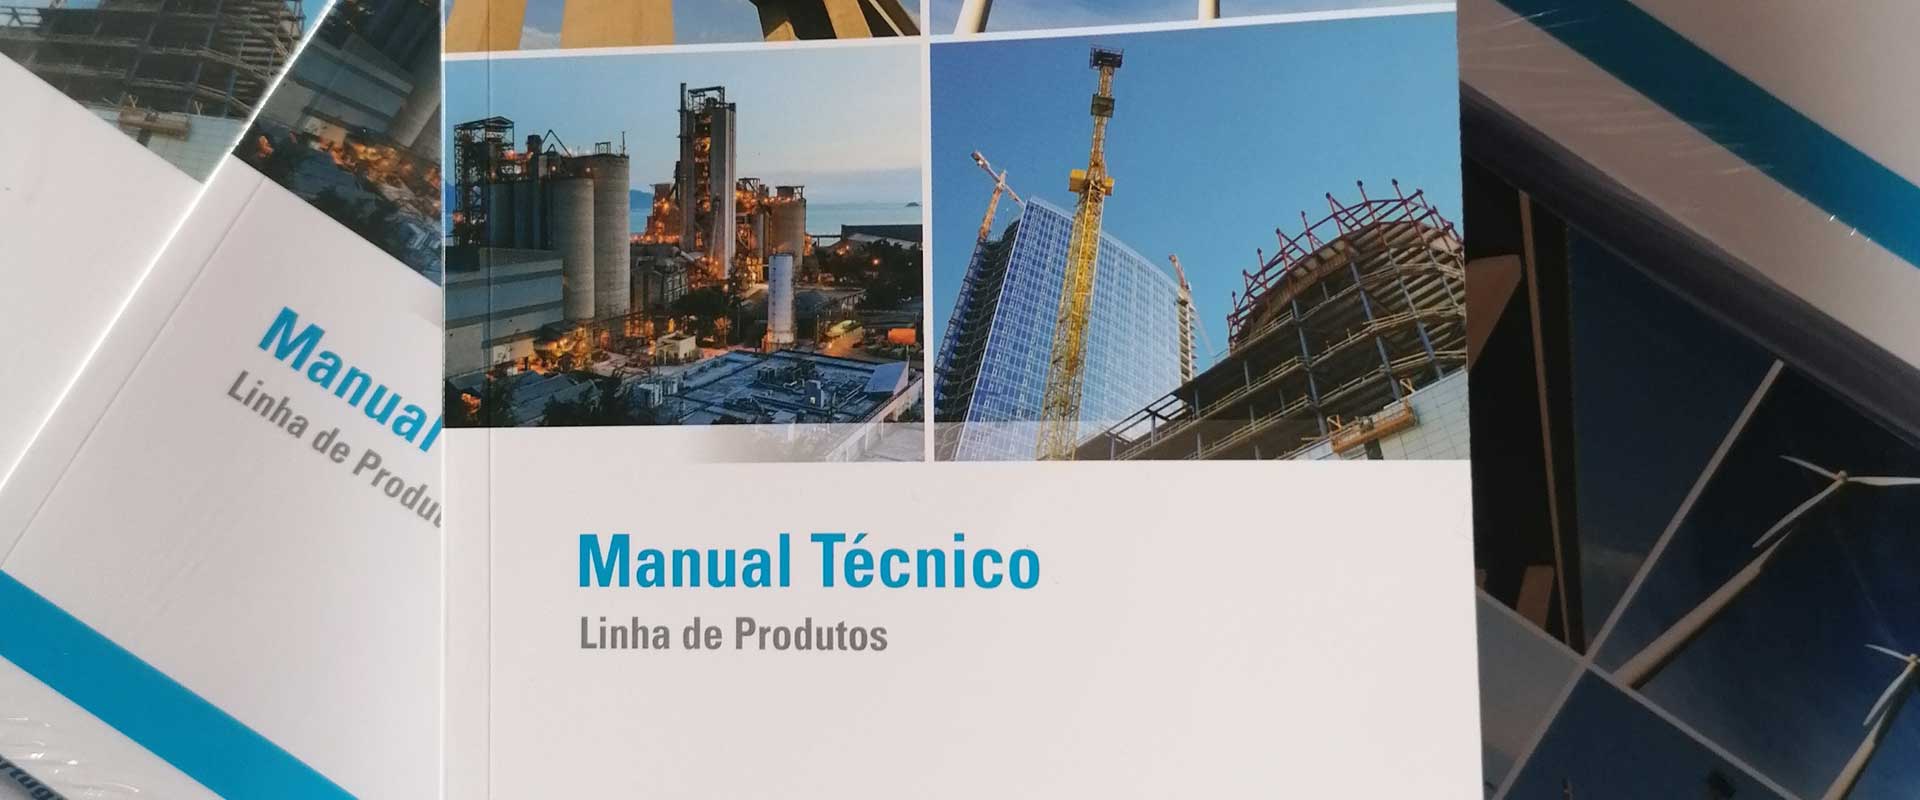 Manual Técnico - Linha de Produtos